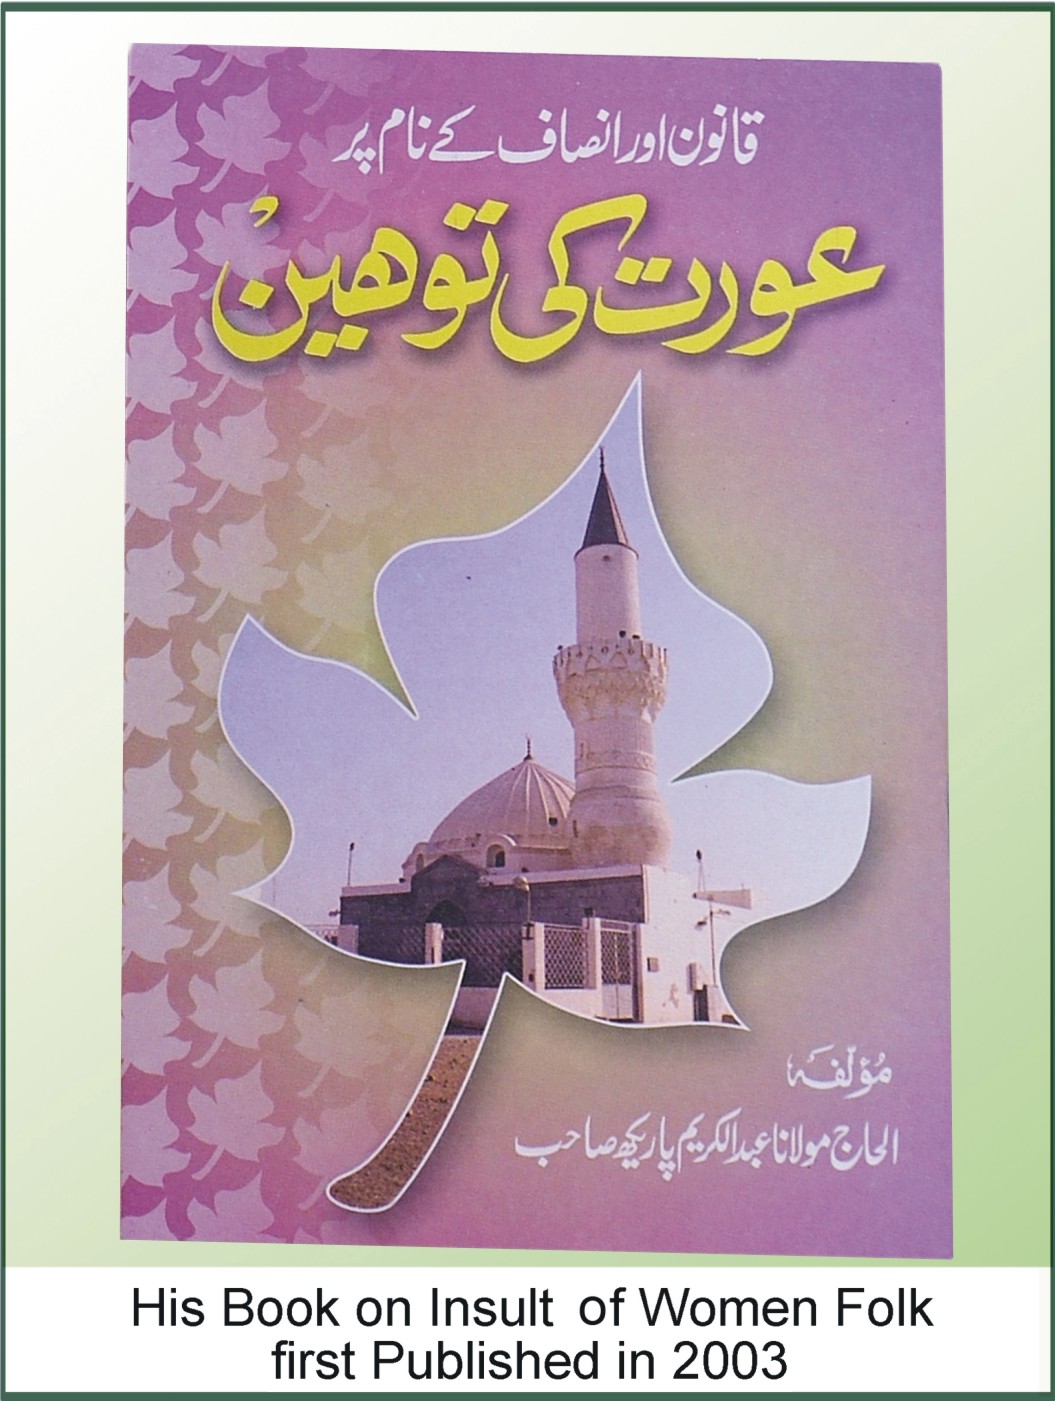 Insult of Women Folk (Urdu) First Published in 2003